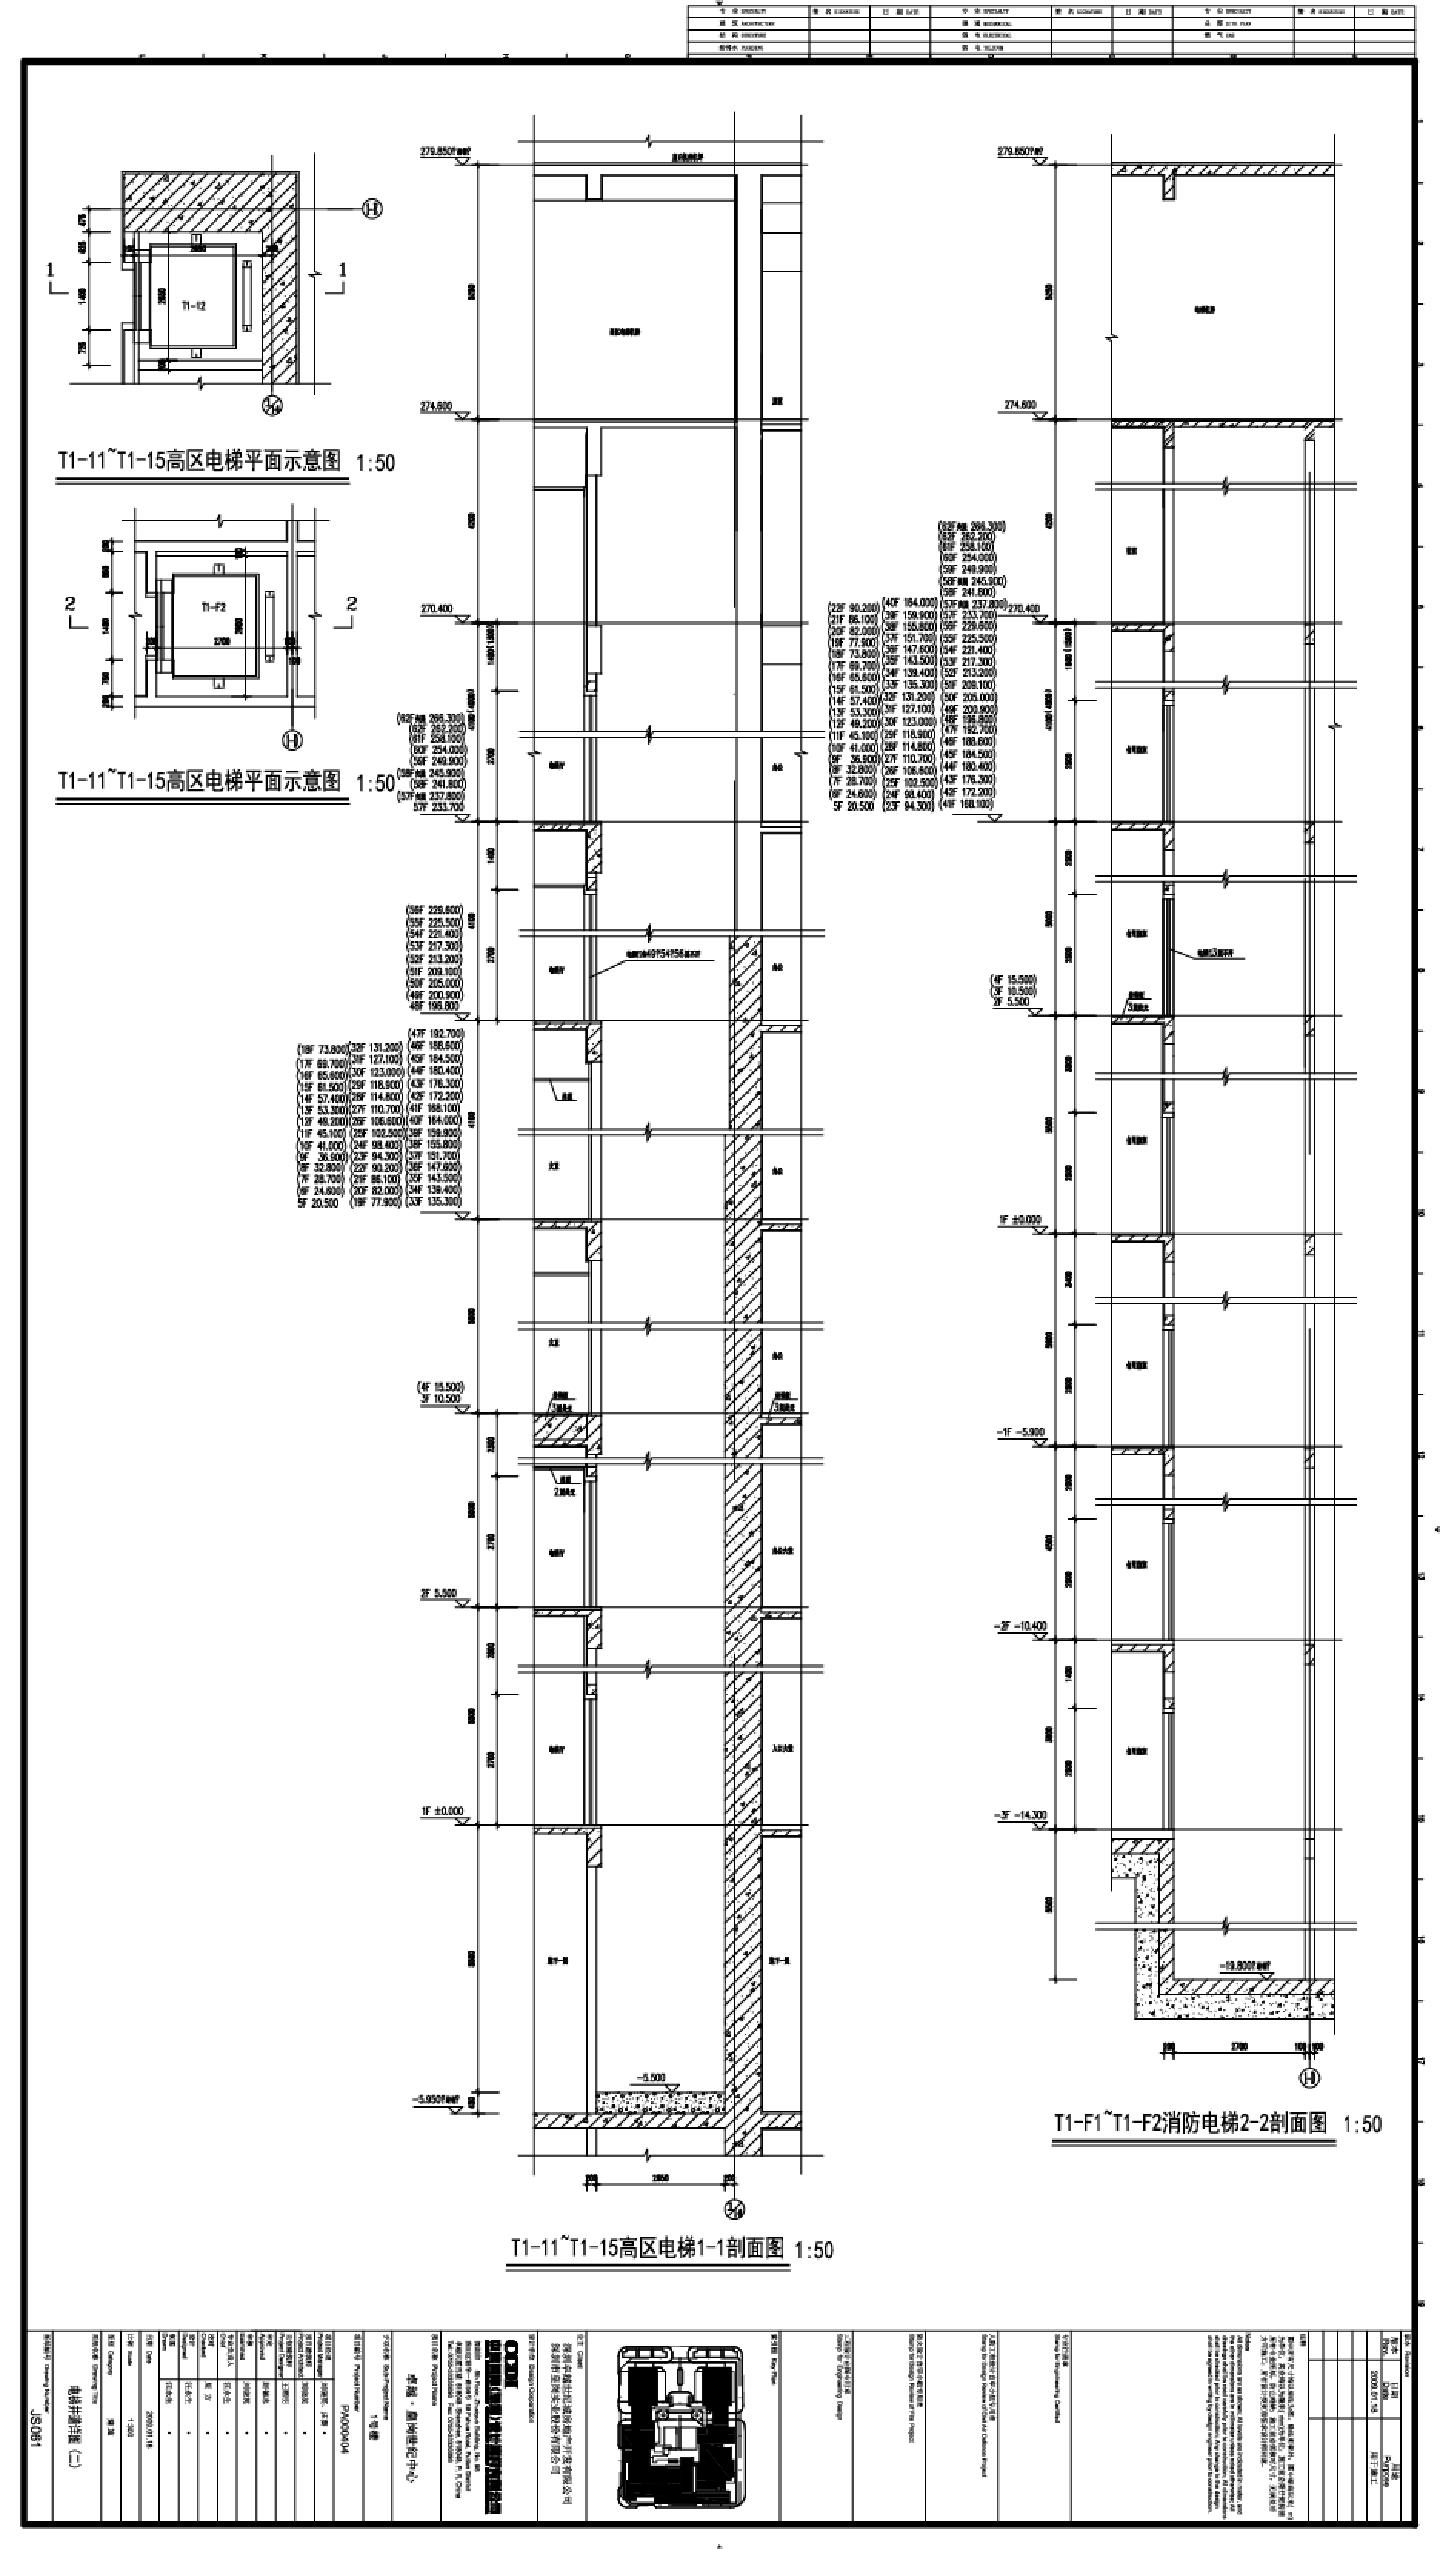 卓越·皇岗世纪中心1号楼建施061电梯详图CAD图.dwg